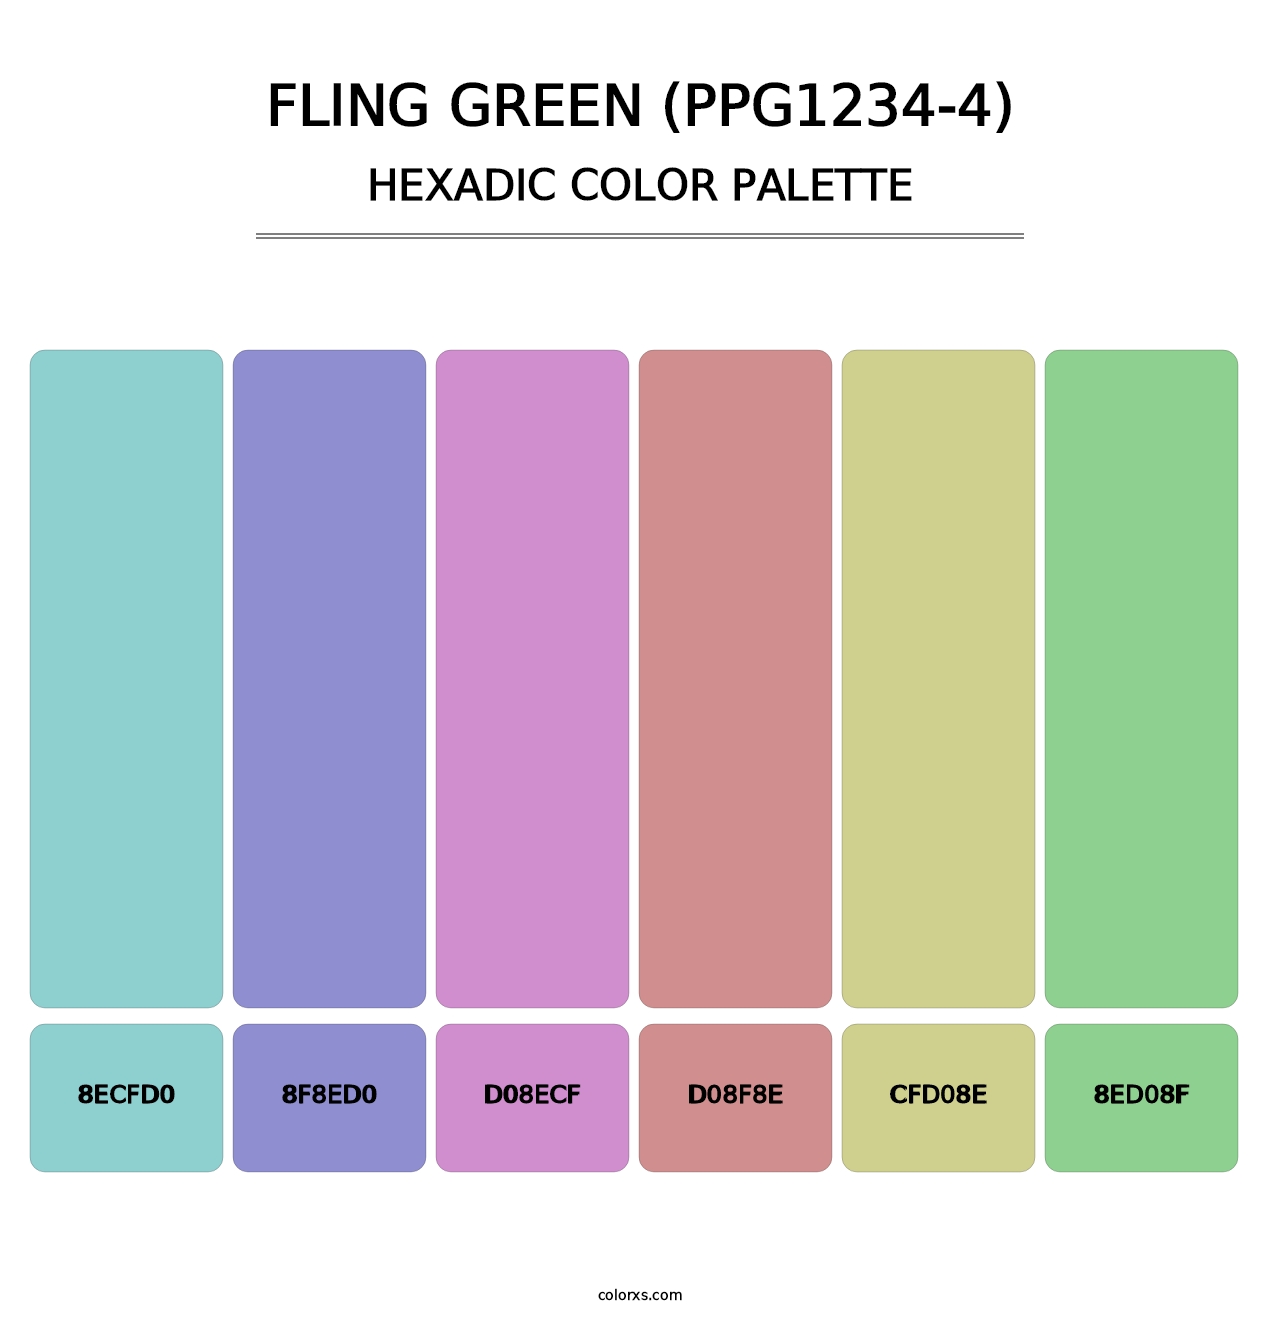 Fling Green (PPG1234-4) - Hexadic Color Palette